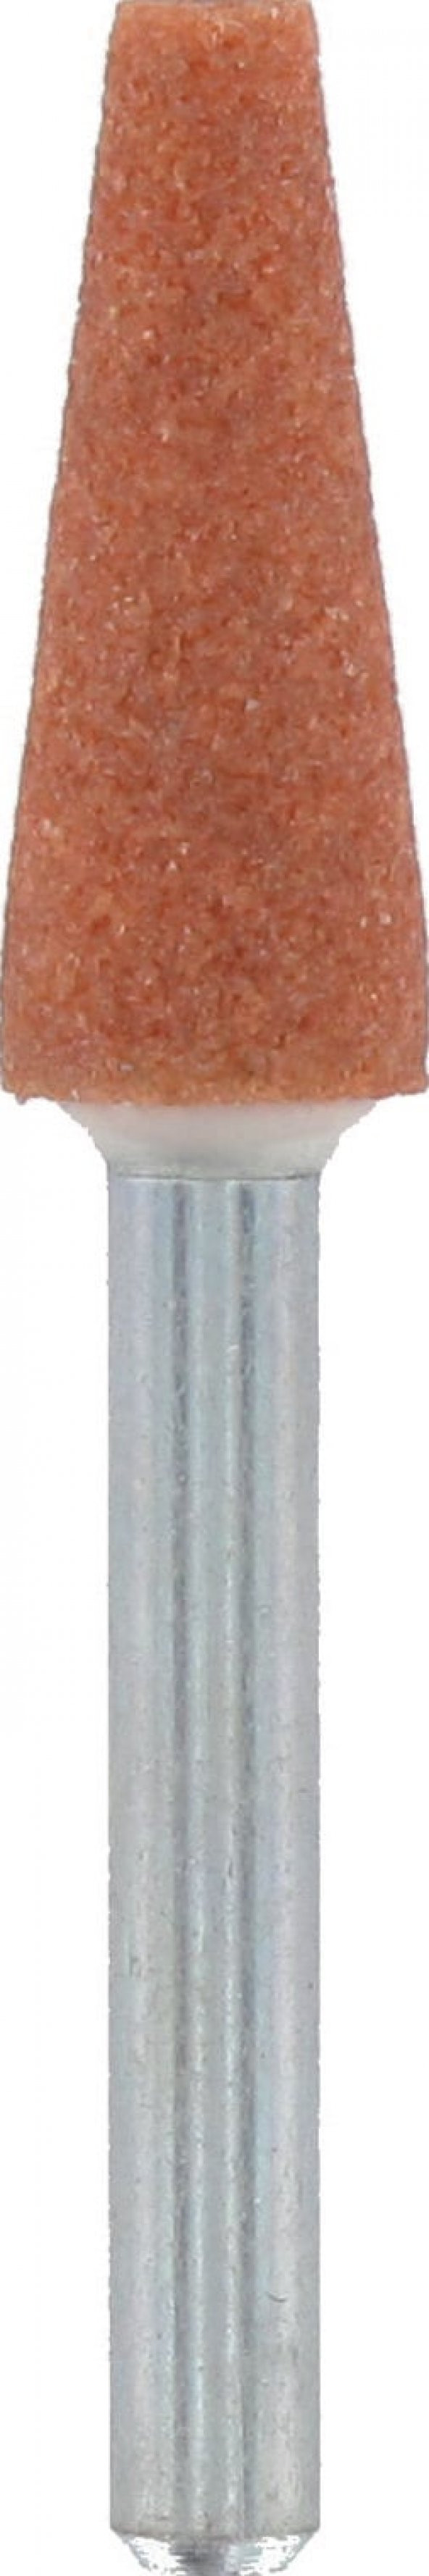 DREMEL® Alüminyum Oksit Taşlama Taşı 6,4 mm (953)